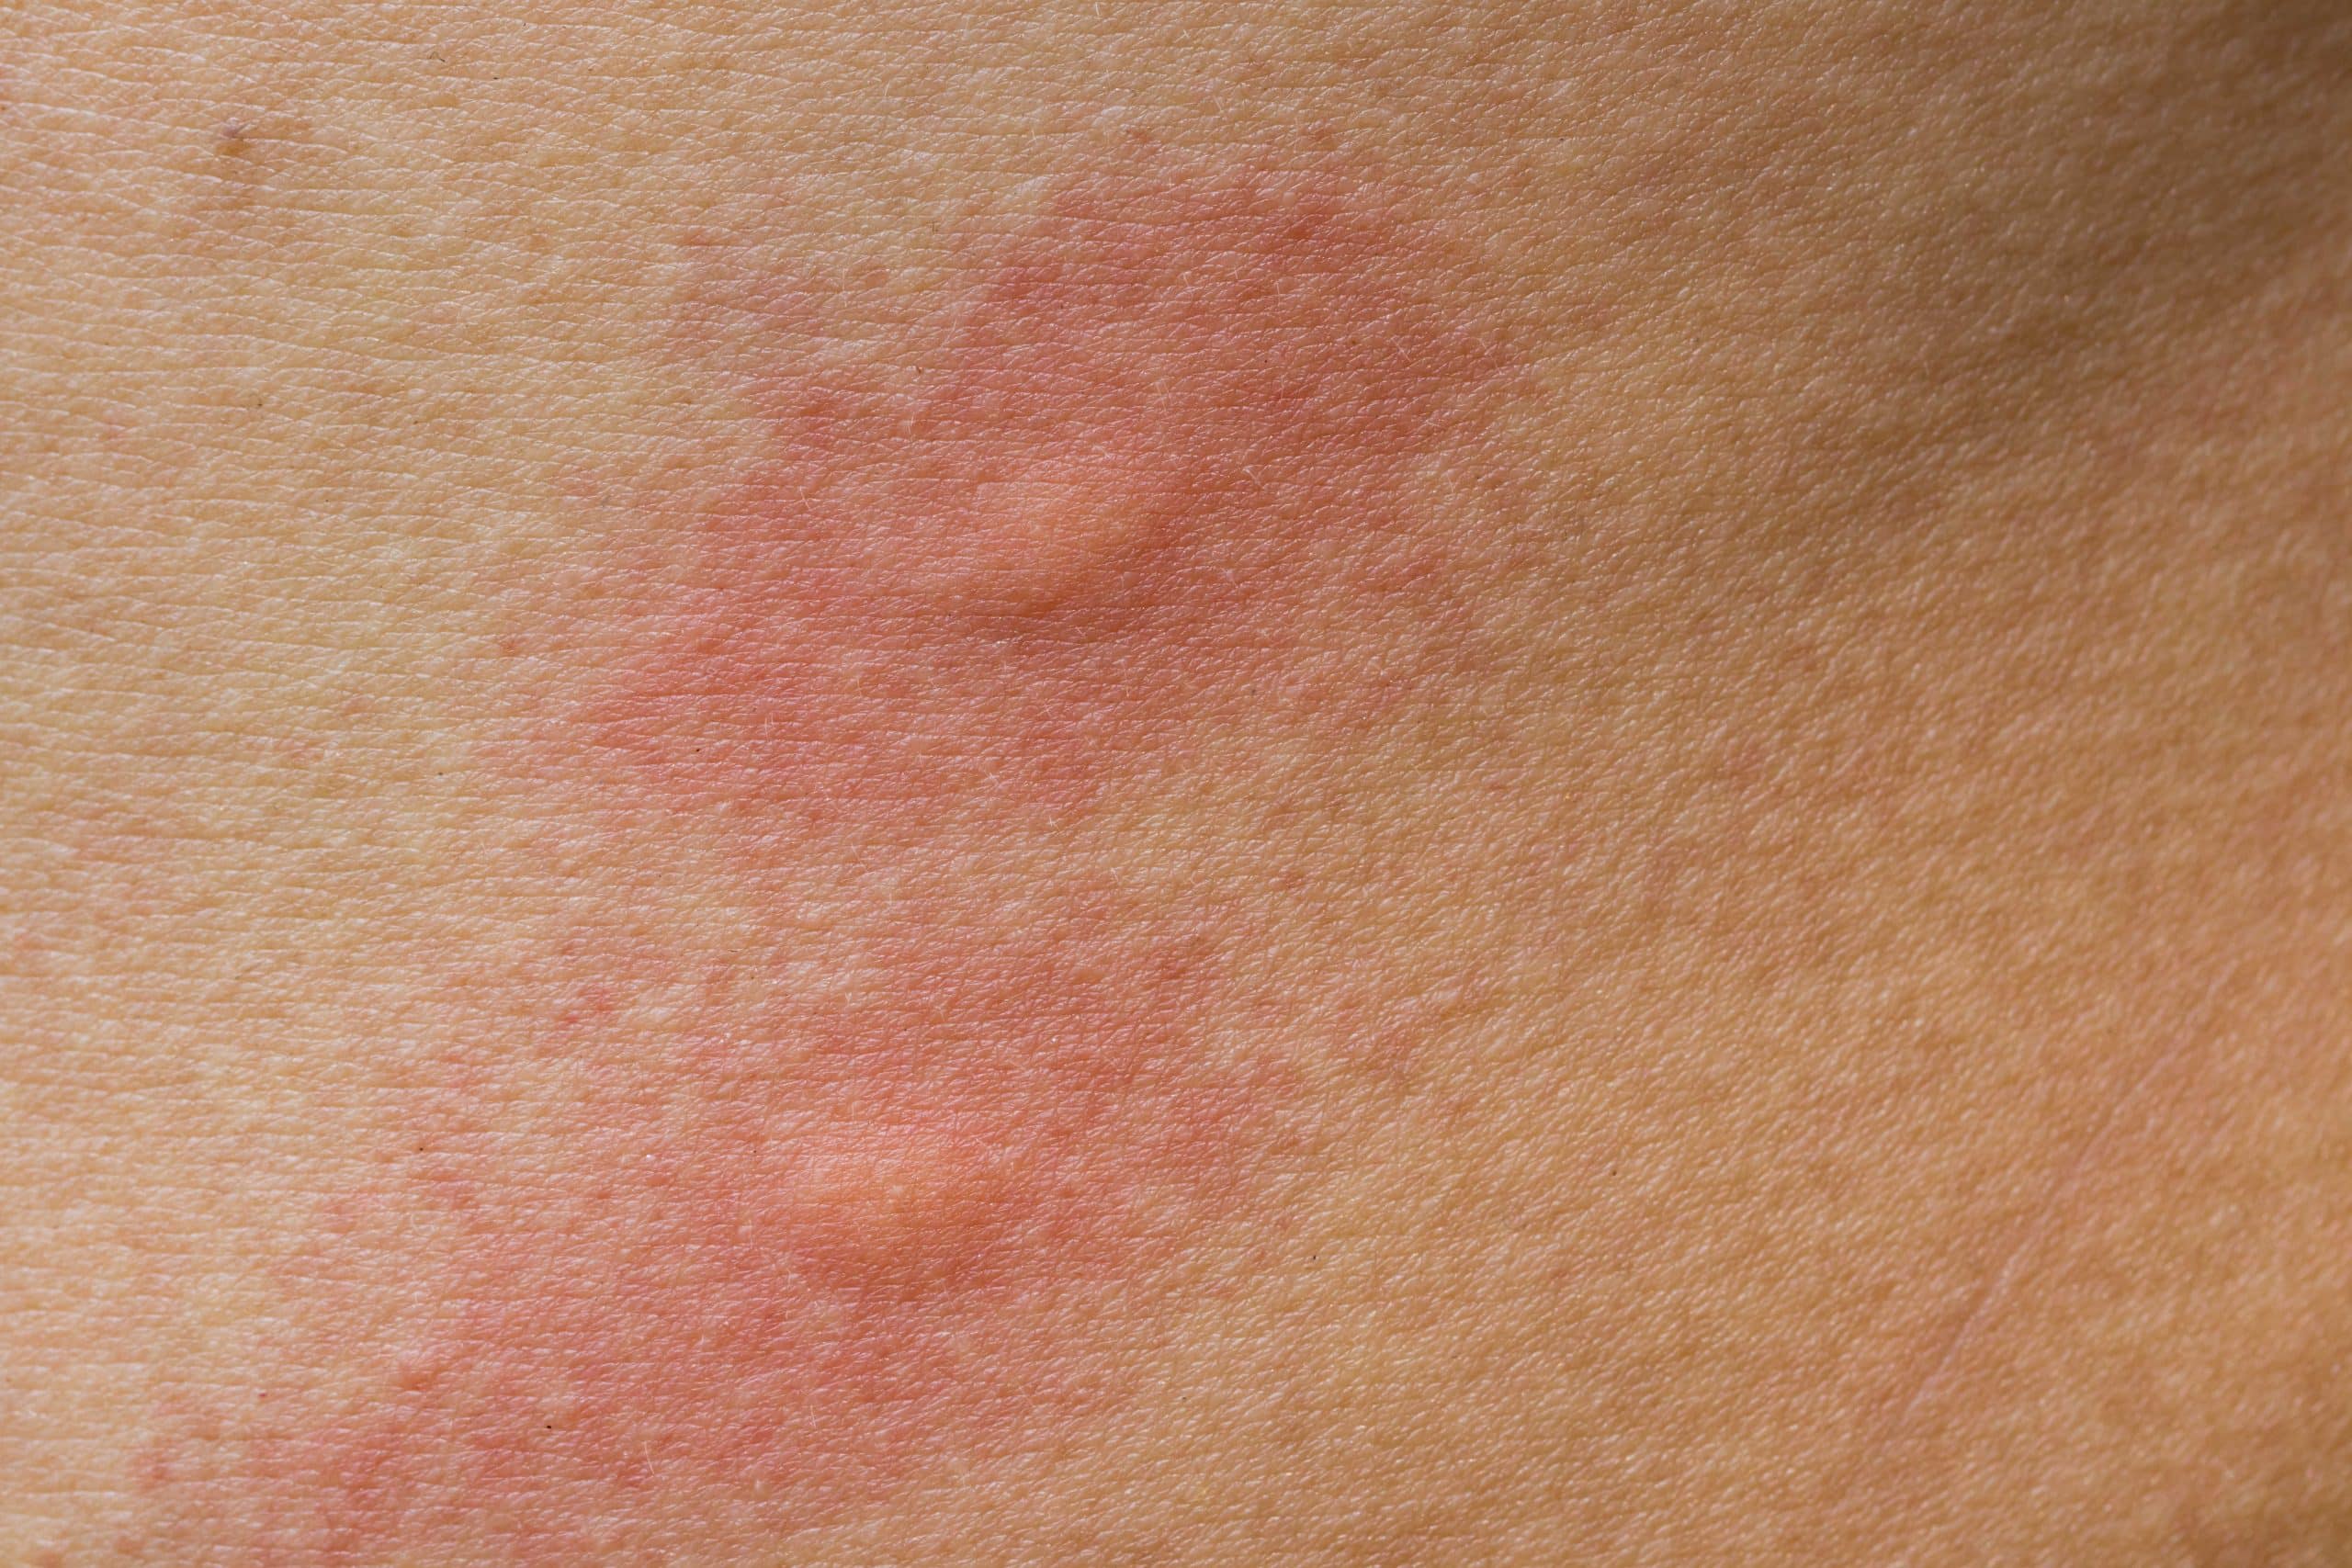 mosquito bite - mosquito infestation